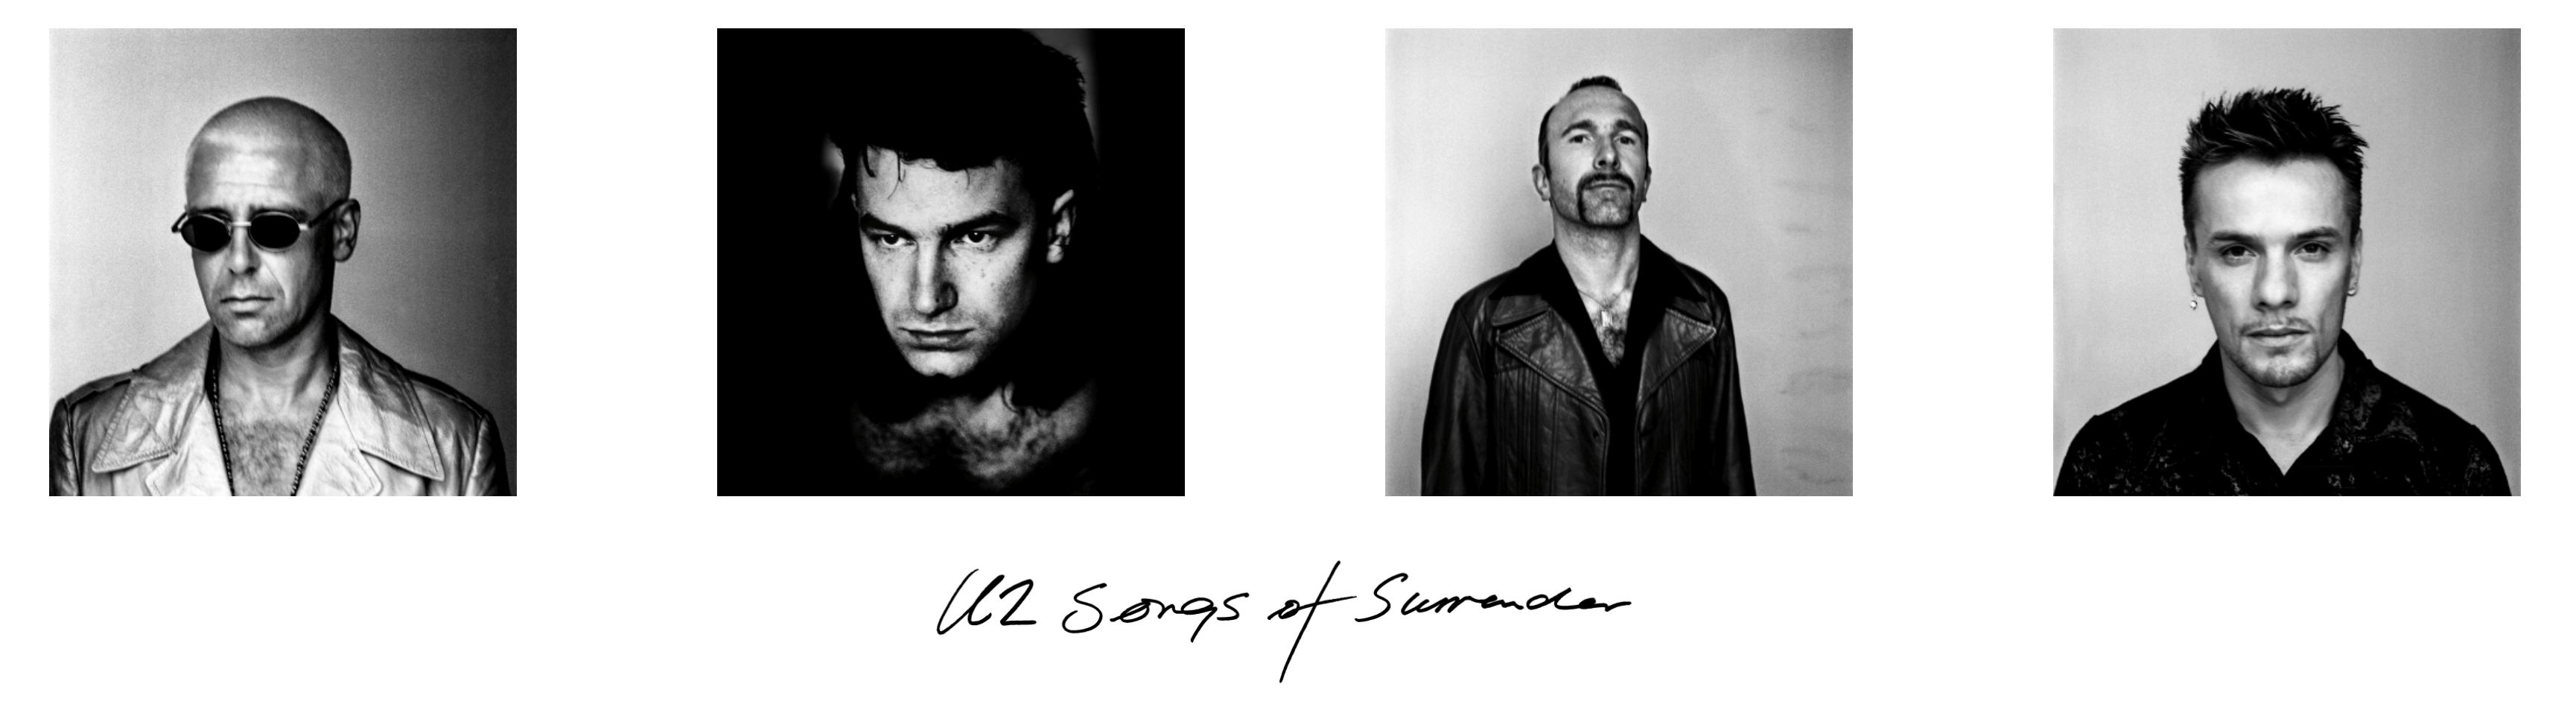 U2 Songs of Surrender Banner